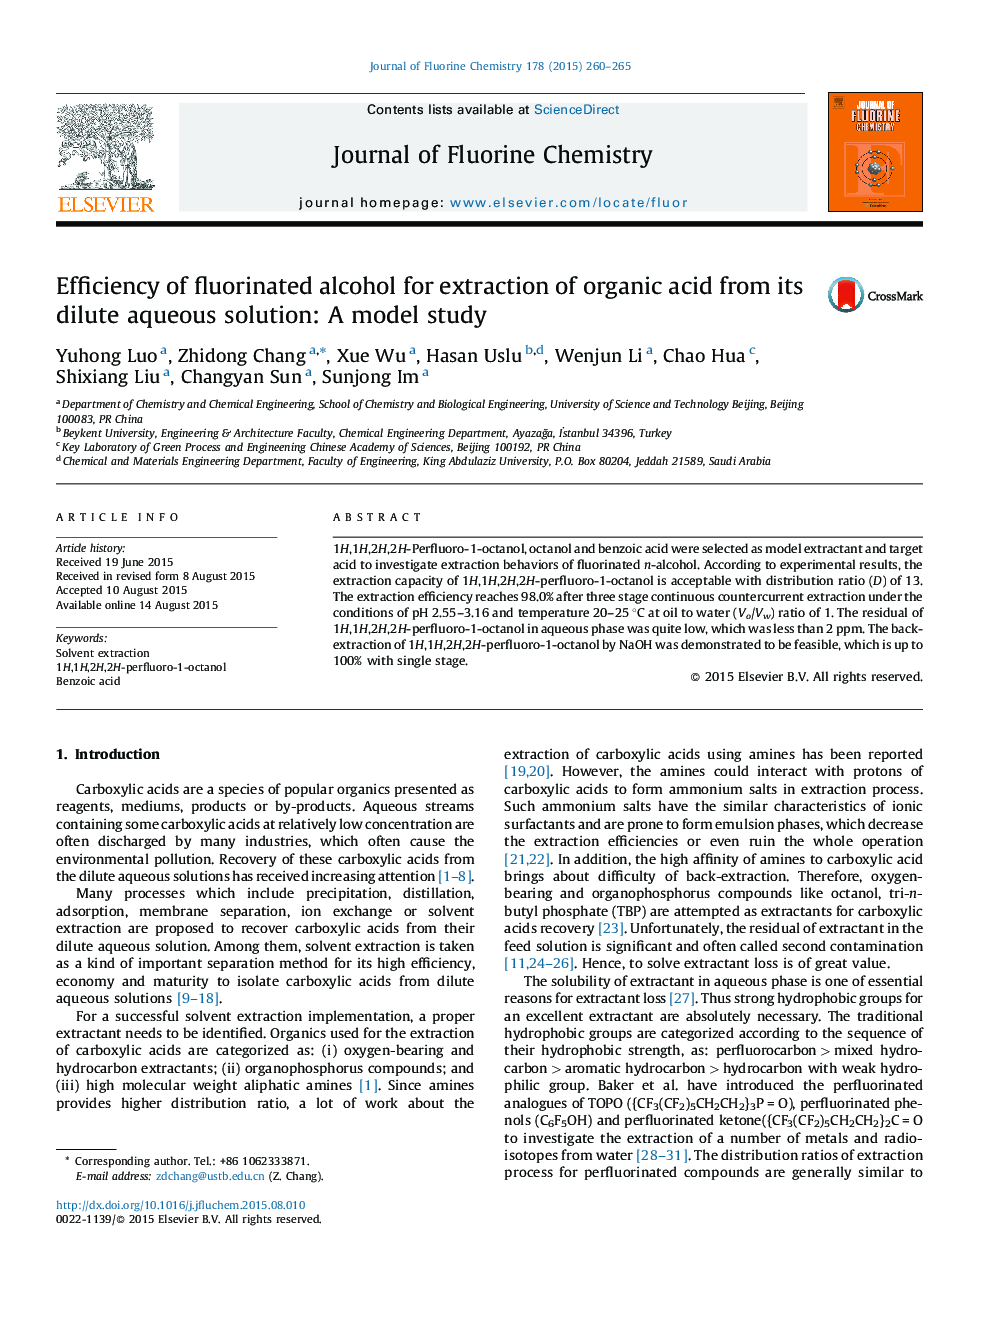 کارایی الکل فلوراید برای استخراج اسید آلی از محلول آبی رقیق شده: یک مطالعه مدل 